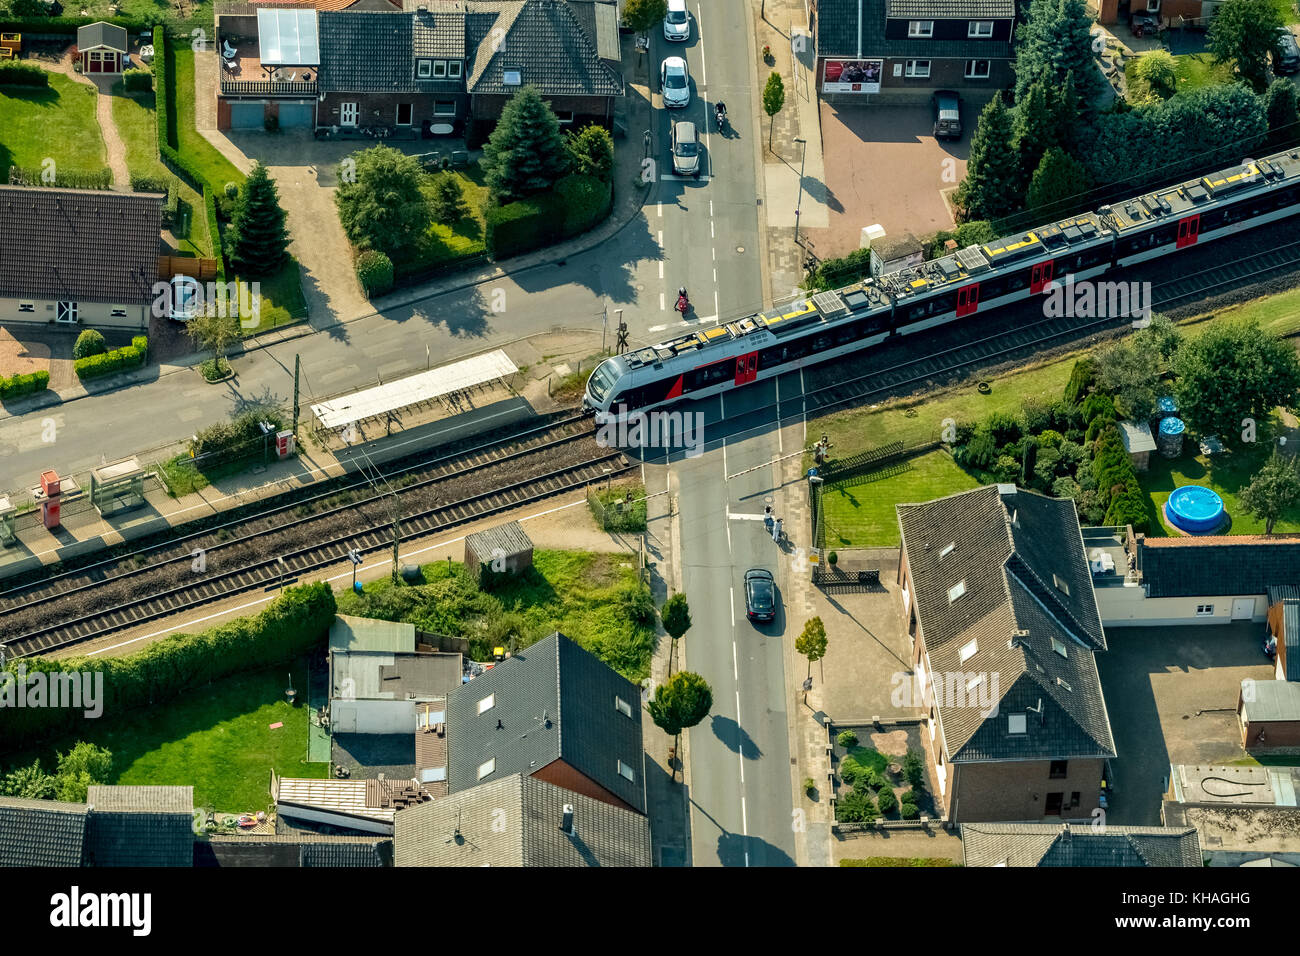 Ferrocarril millingen cruzando la carretera principal con el tren regional, betuweline, rees, el Bajo Rin, Rin, Renania del Norte-Westfalia, Alemania Foto de stock